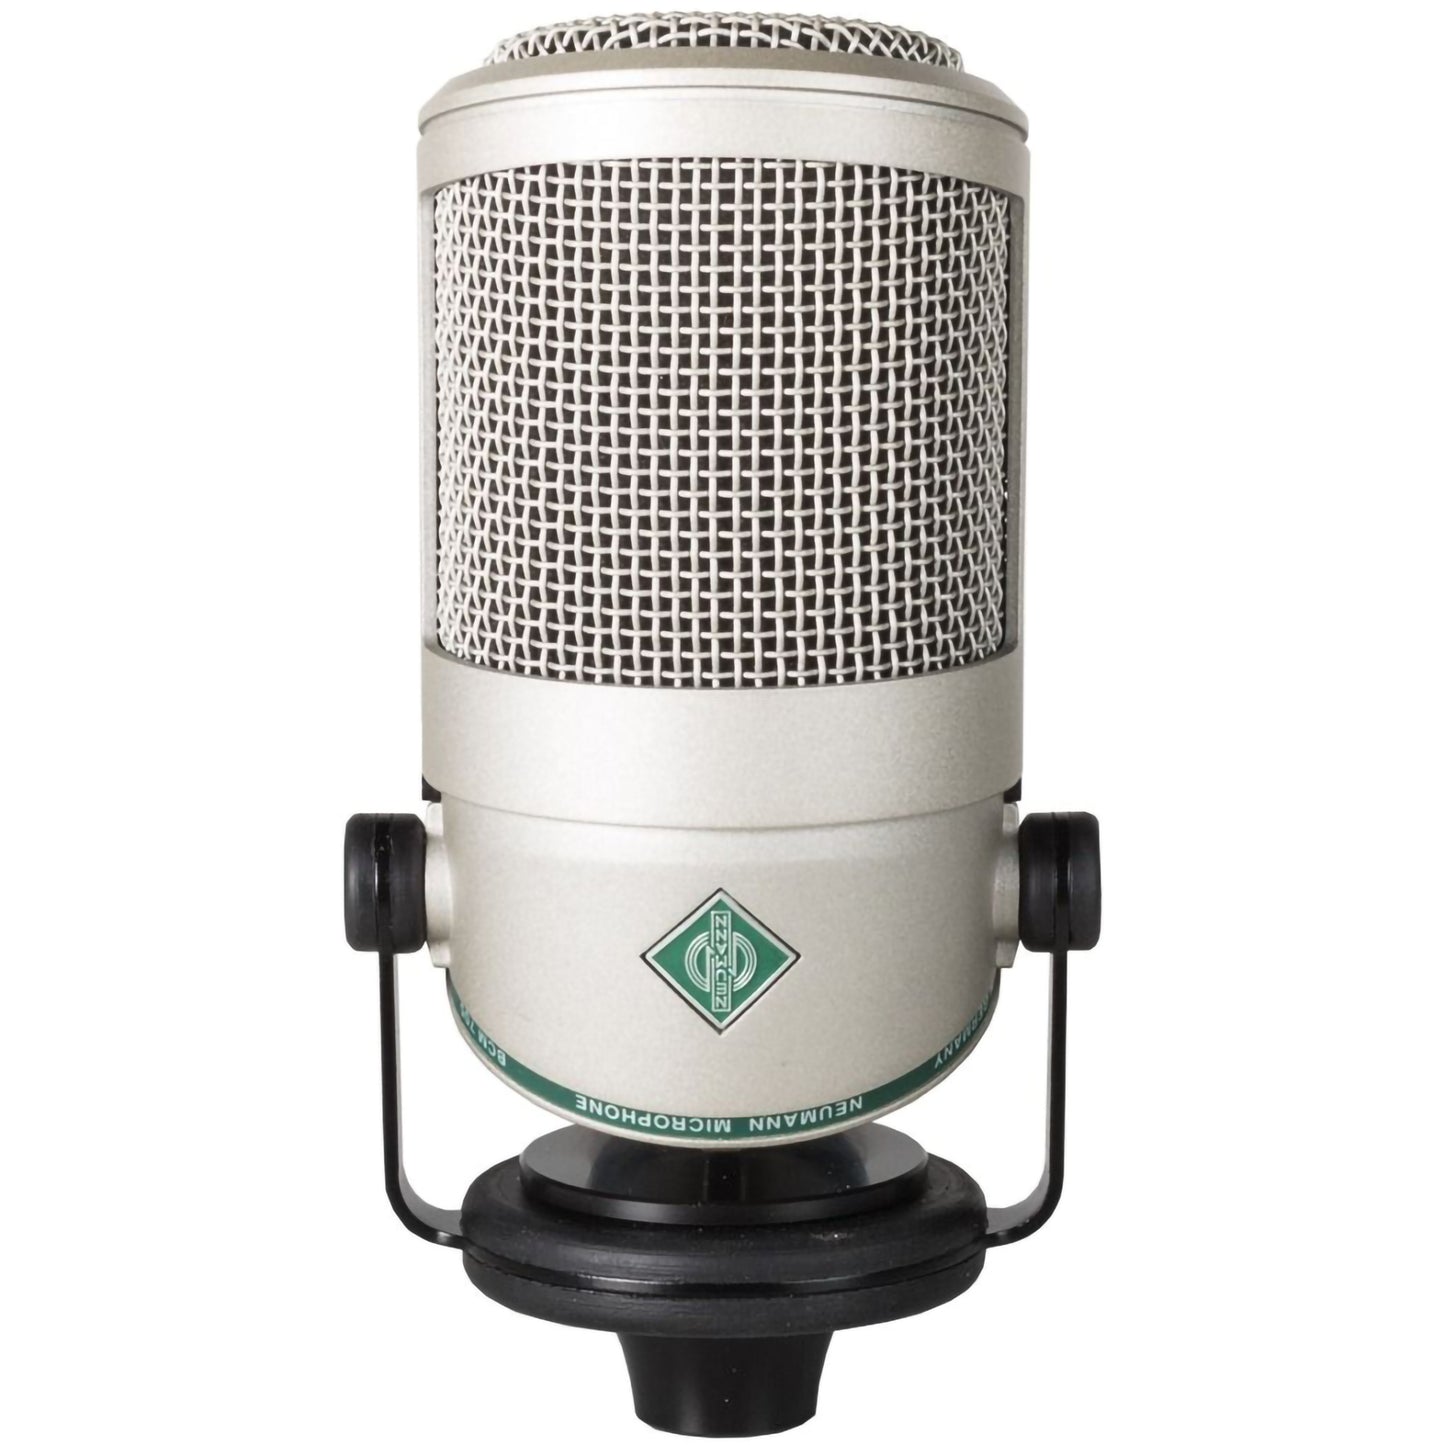 Neumann BCM 705 Broadcast Dynamic Microphone Small Diaphragm Hypercardioid